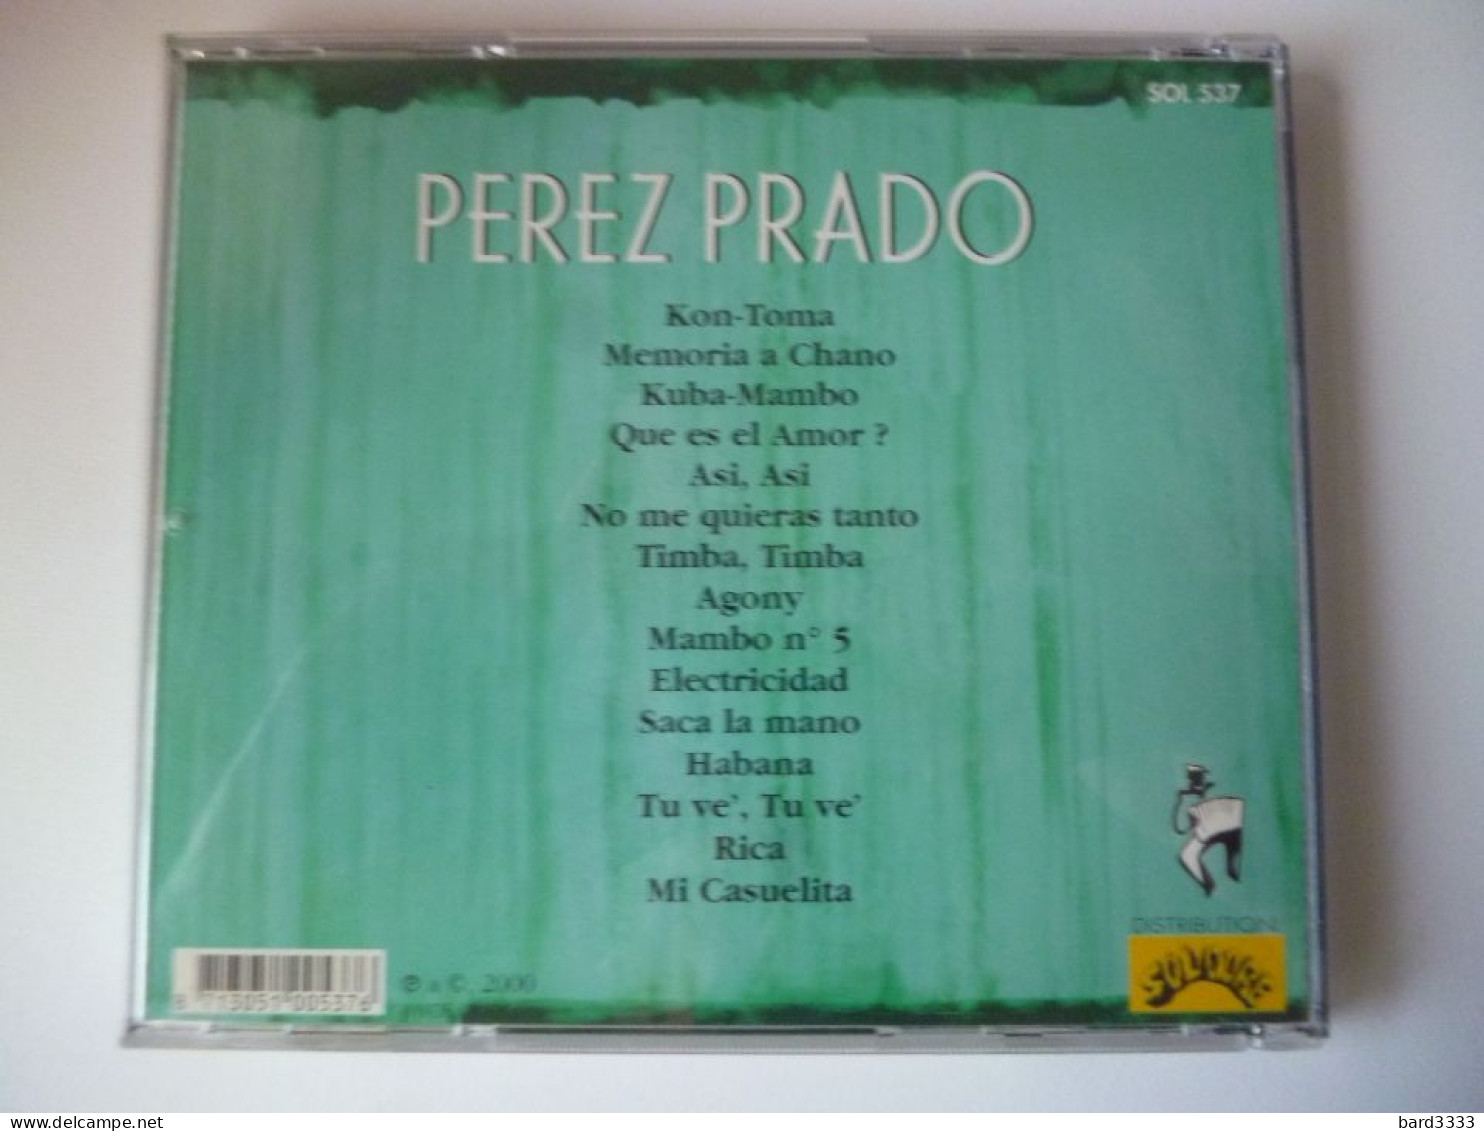 CD Perez Prado - Volledige Verzamelingen